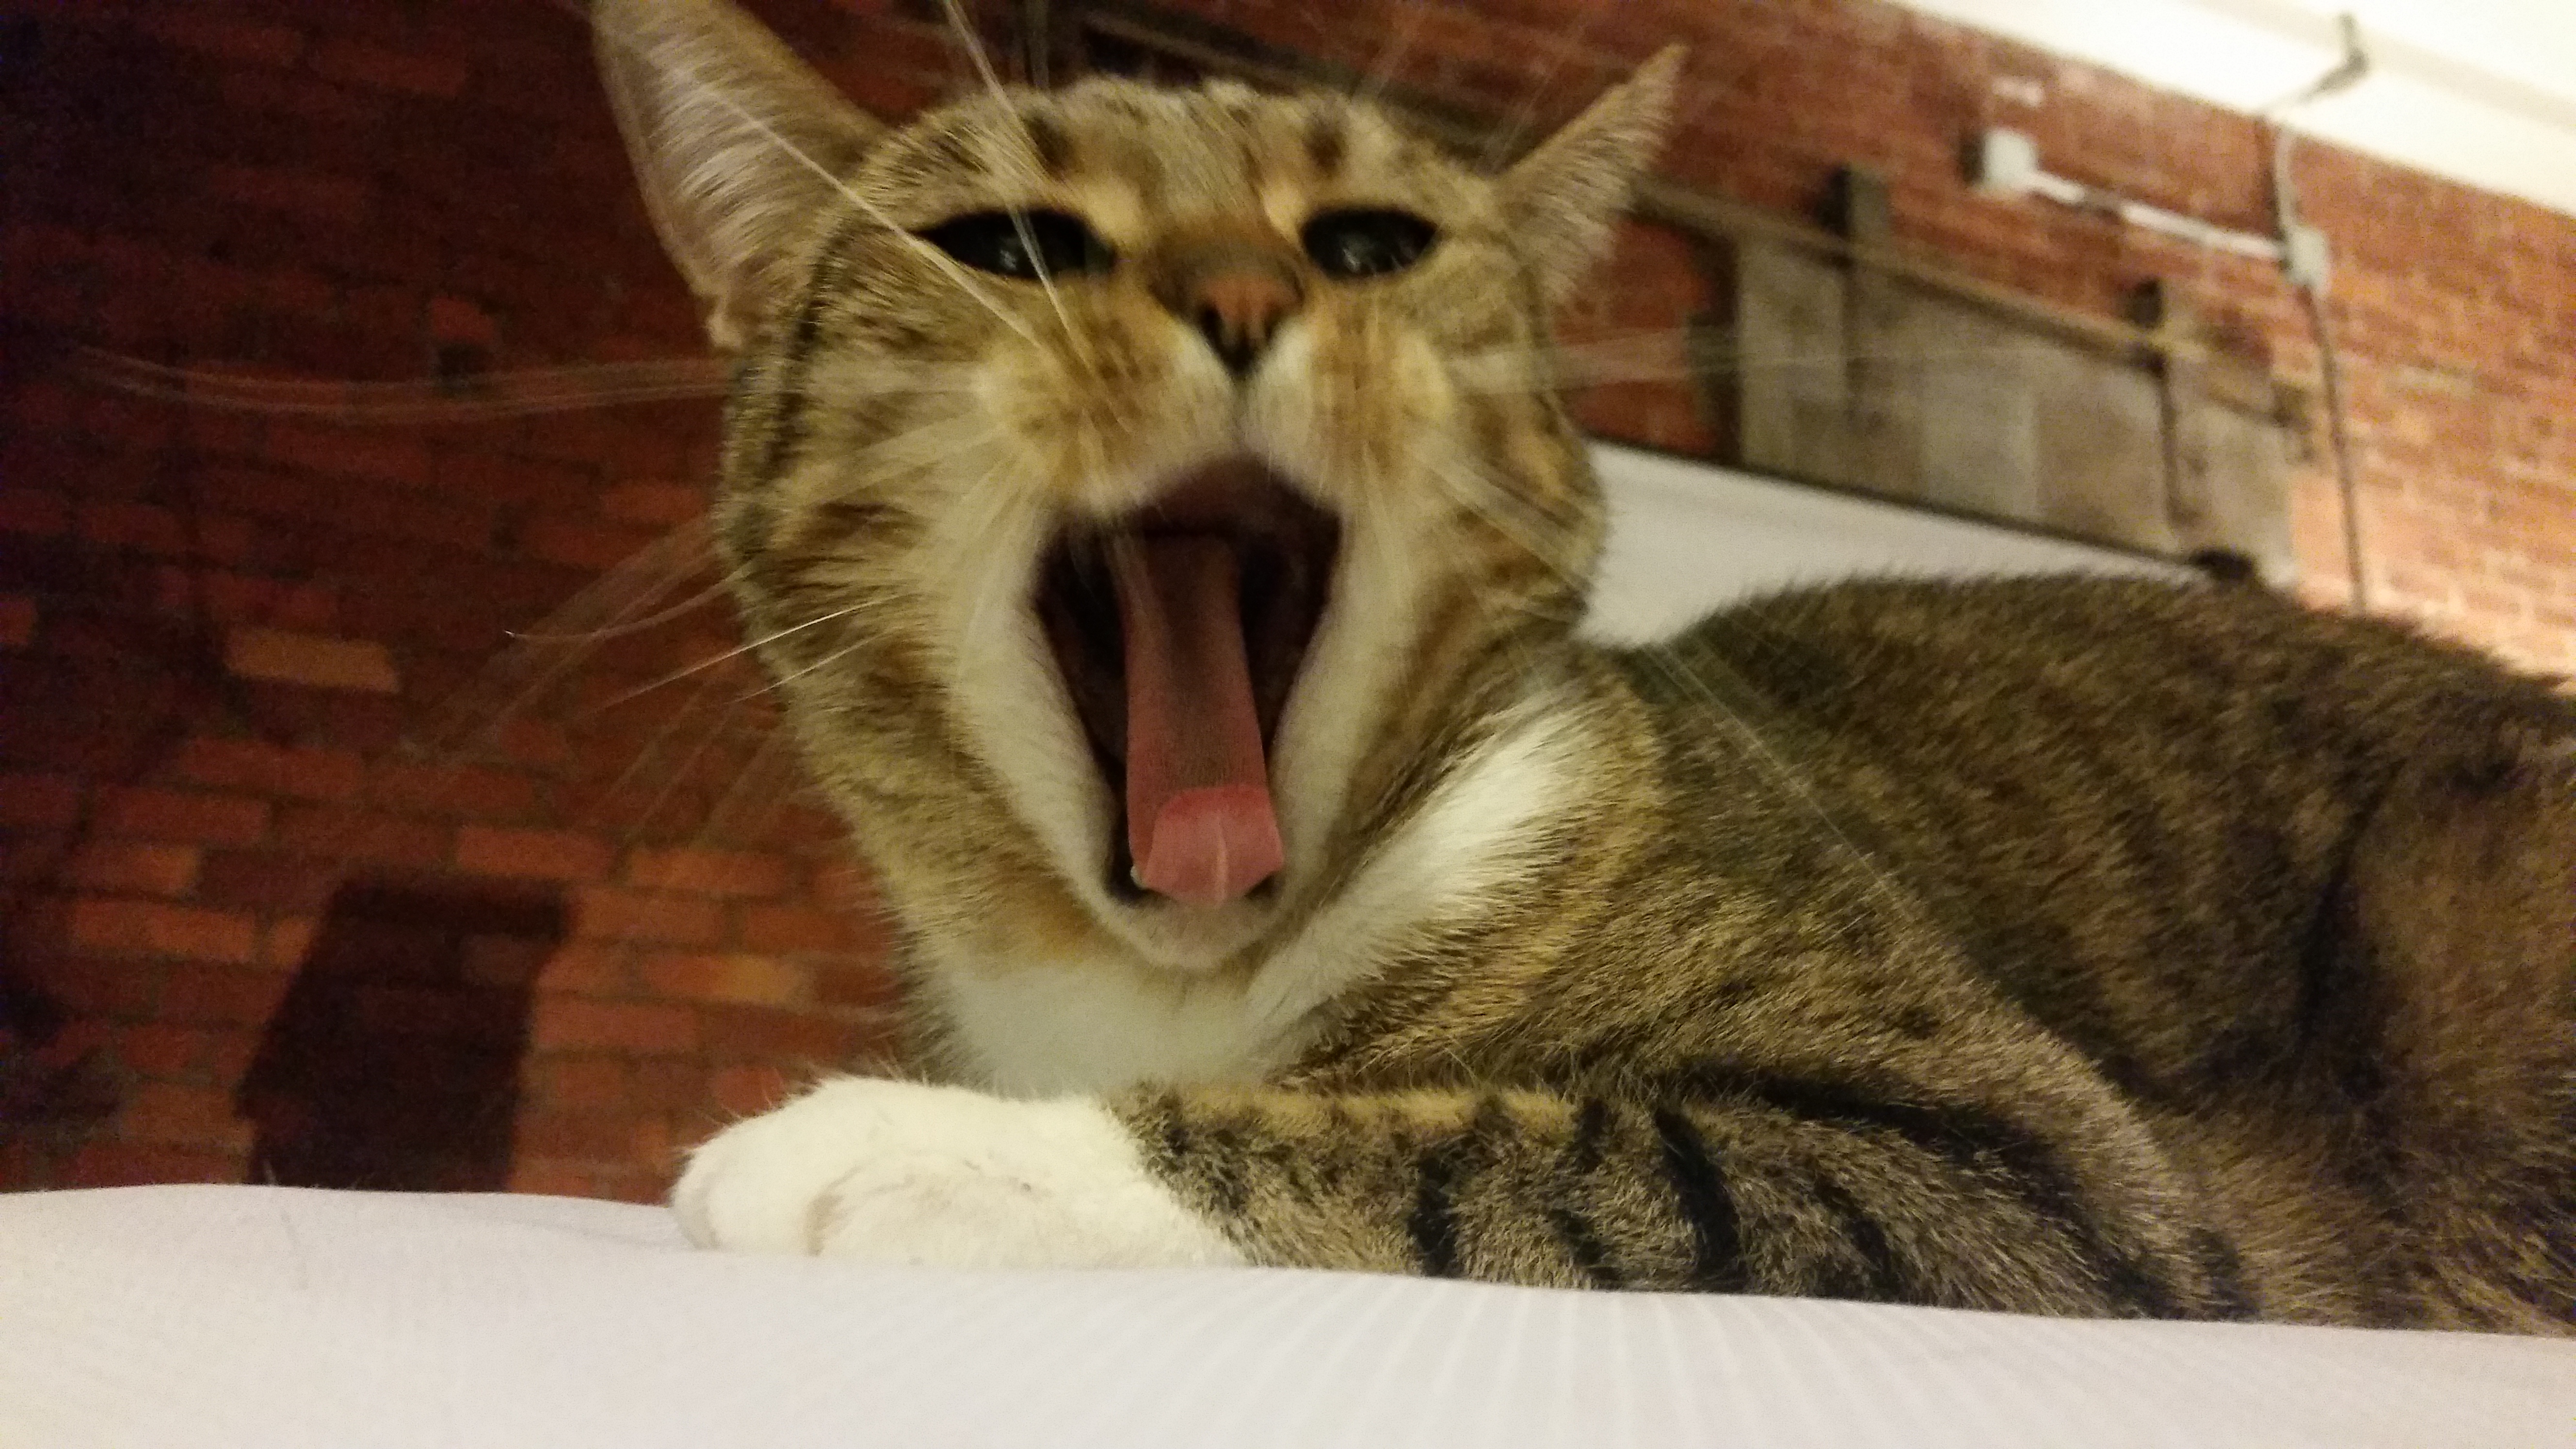 June Yawn